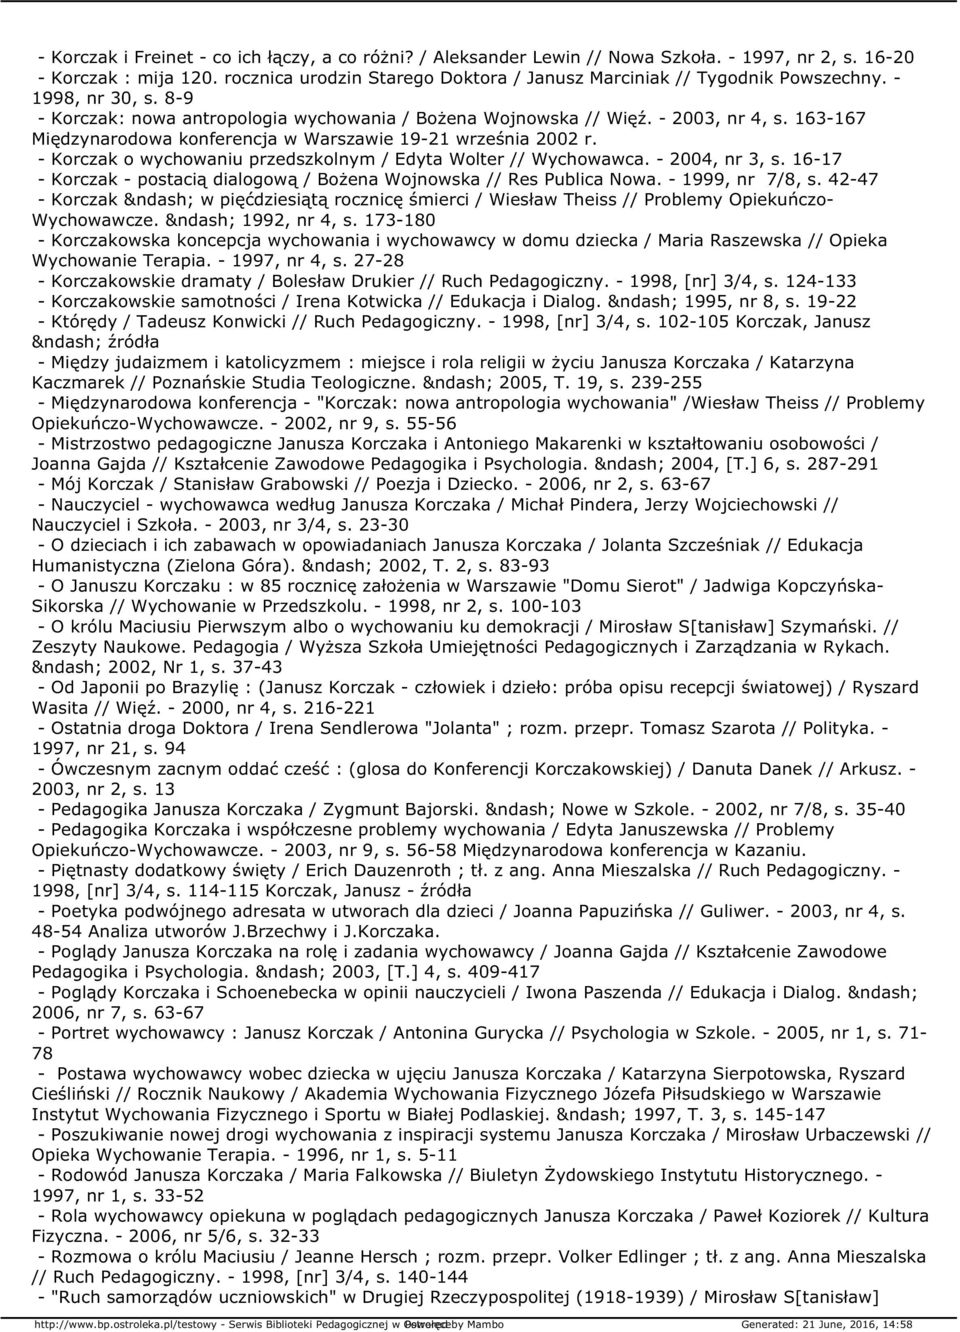 163-167 Międzynarodowa konferencja w Warszawie 19-21 września 2002 r. - Korczak o wychowaniu przedszkolnym / Edyta Wolter // Wychowawca. - 2004, nr 3, s.